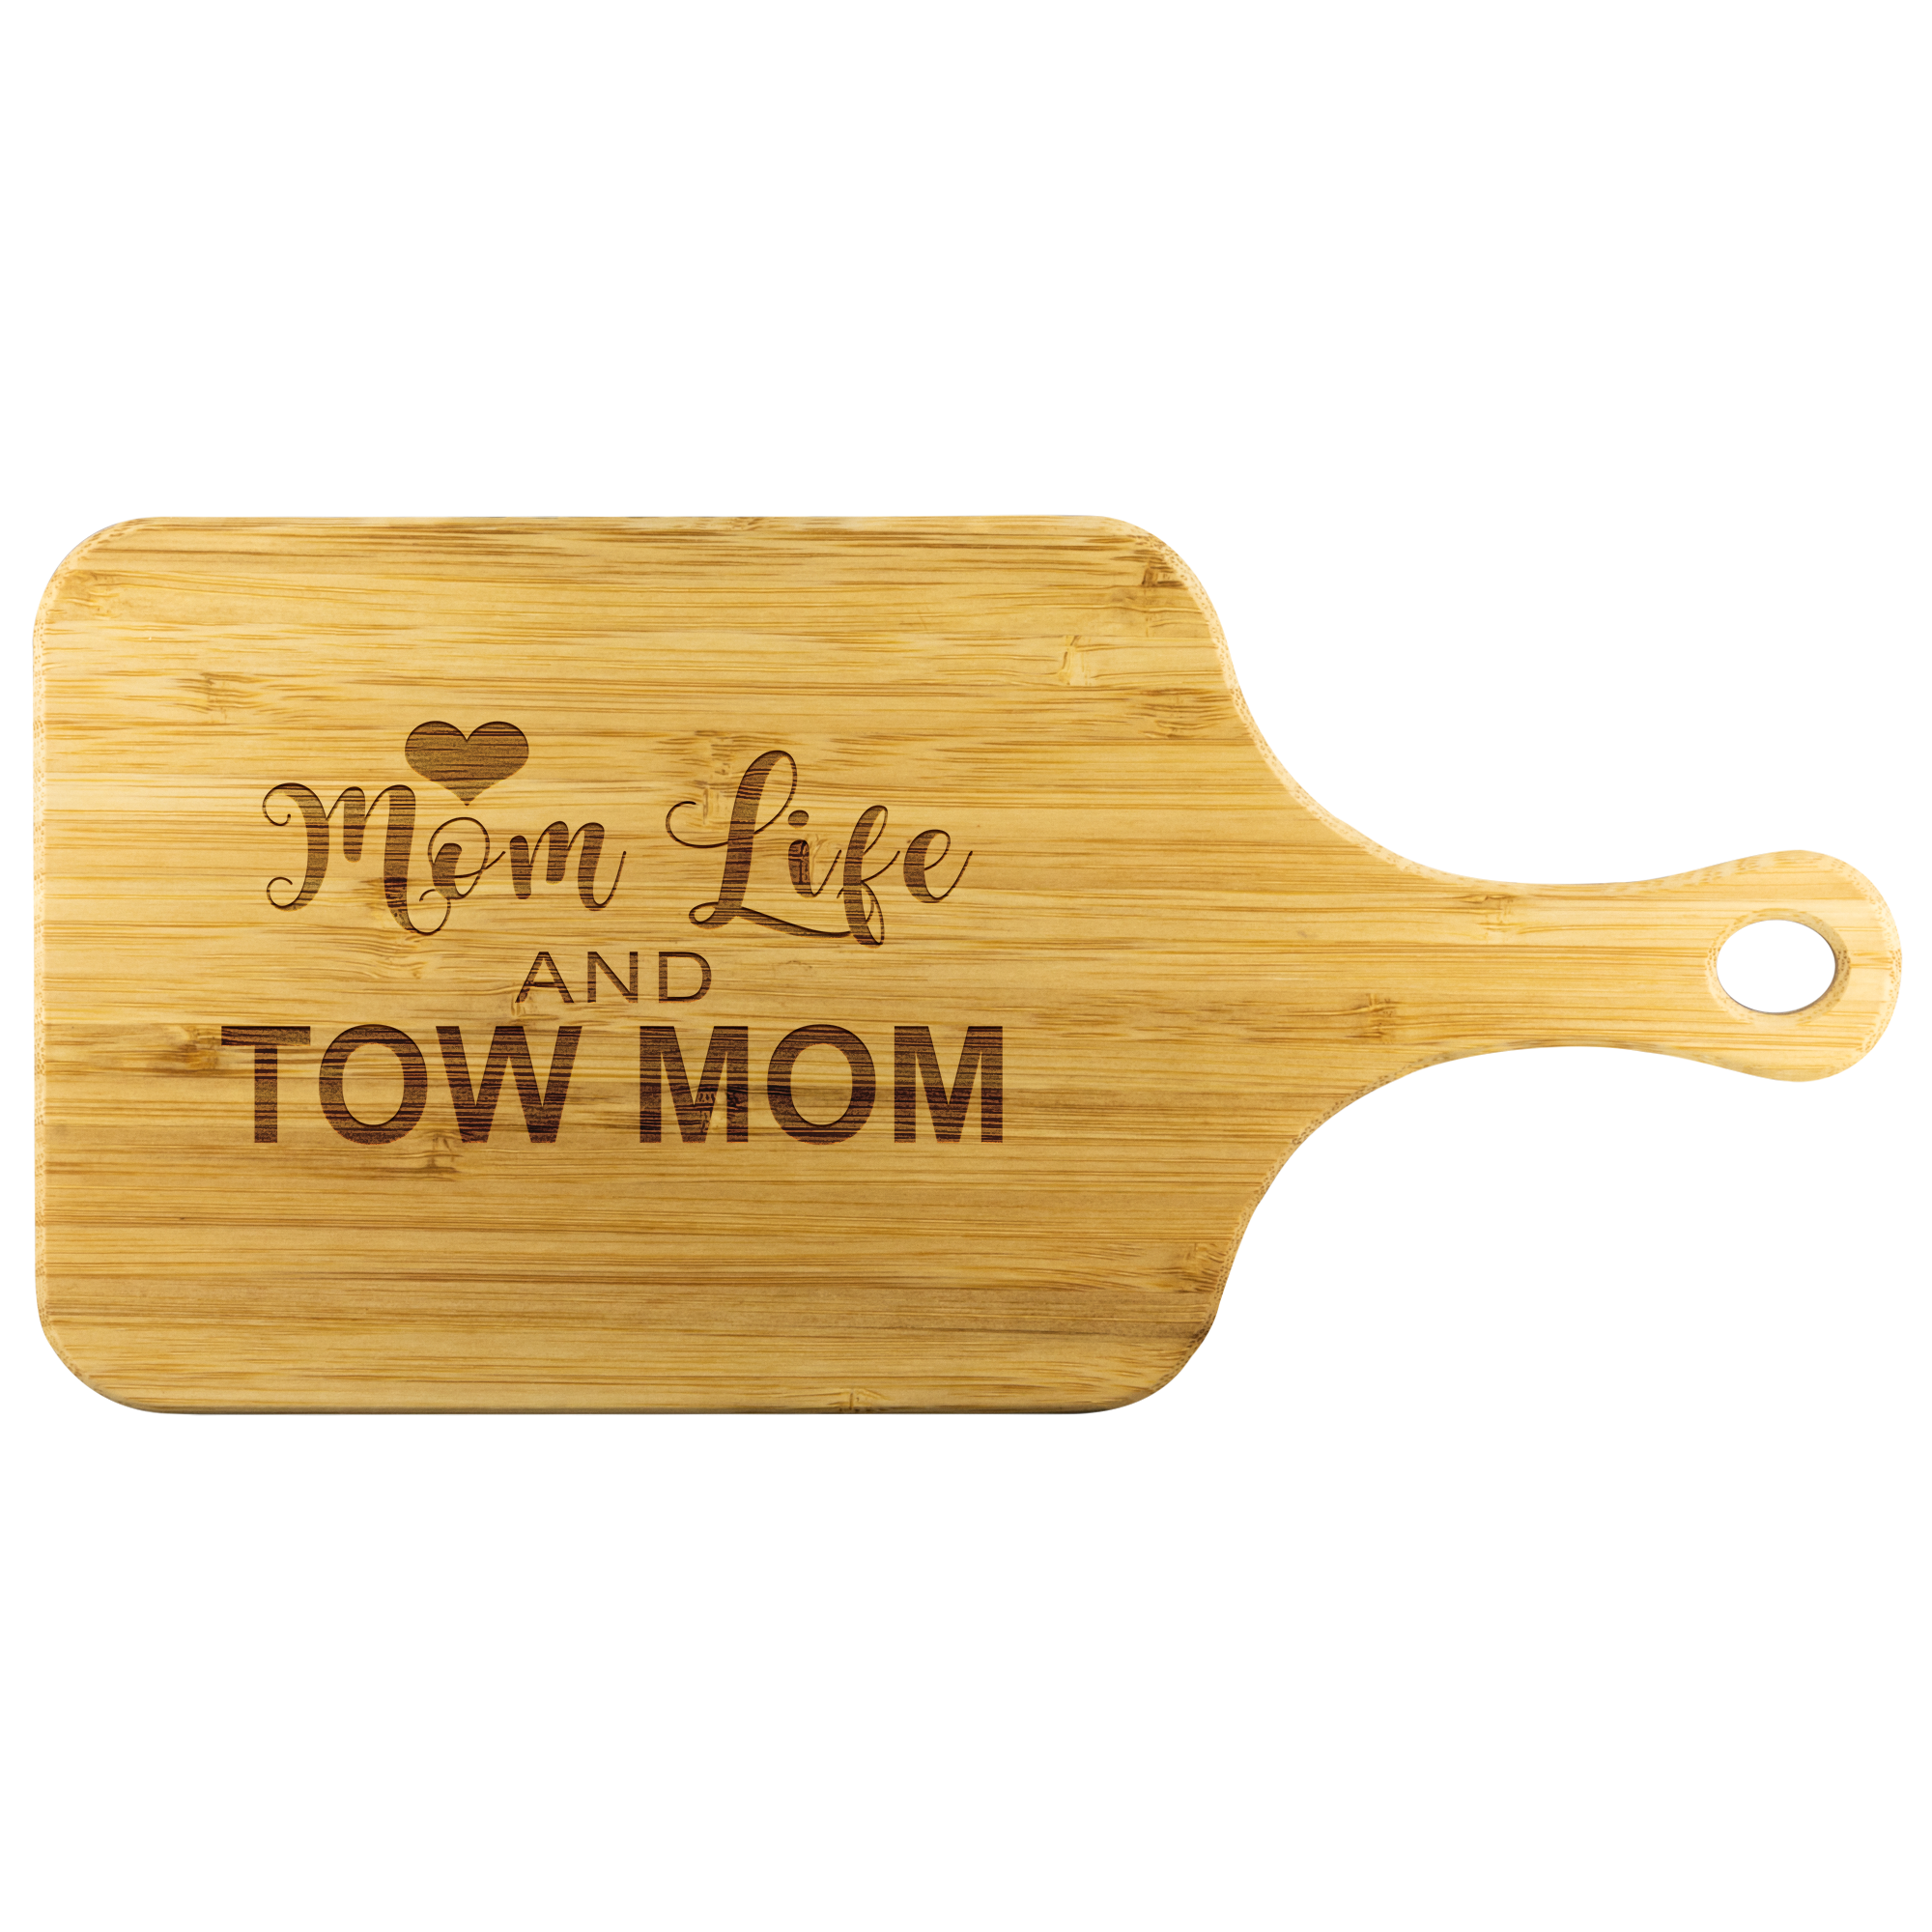 Mom Life Tow Wife Wood Cutting Board